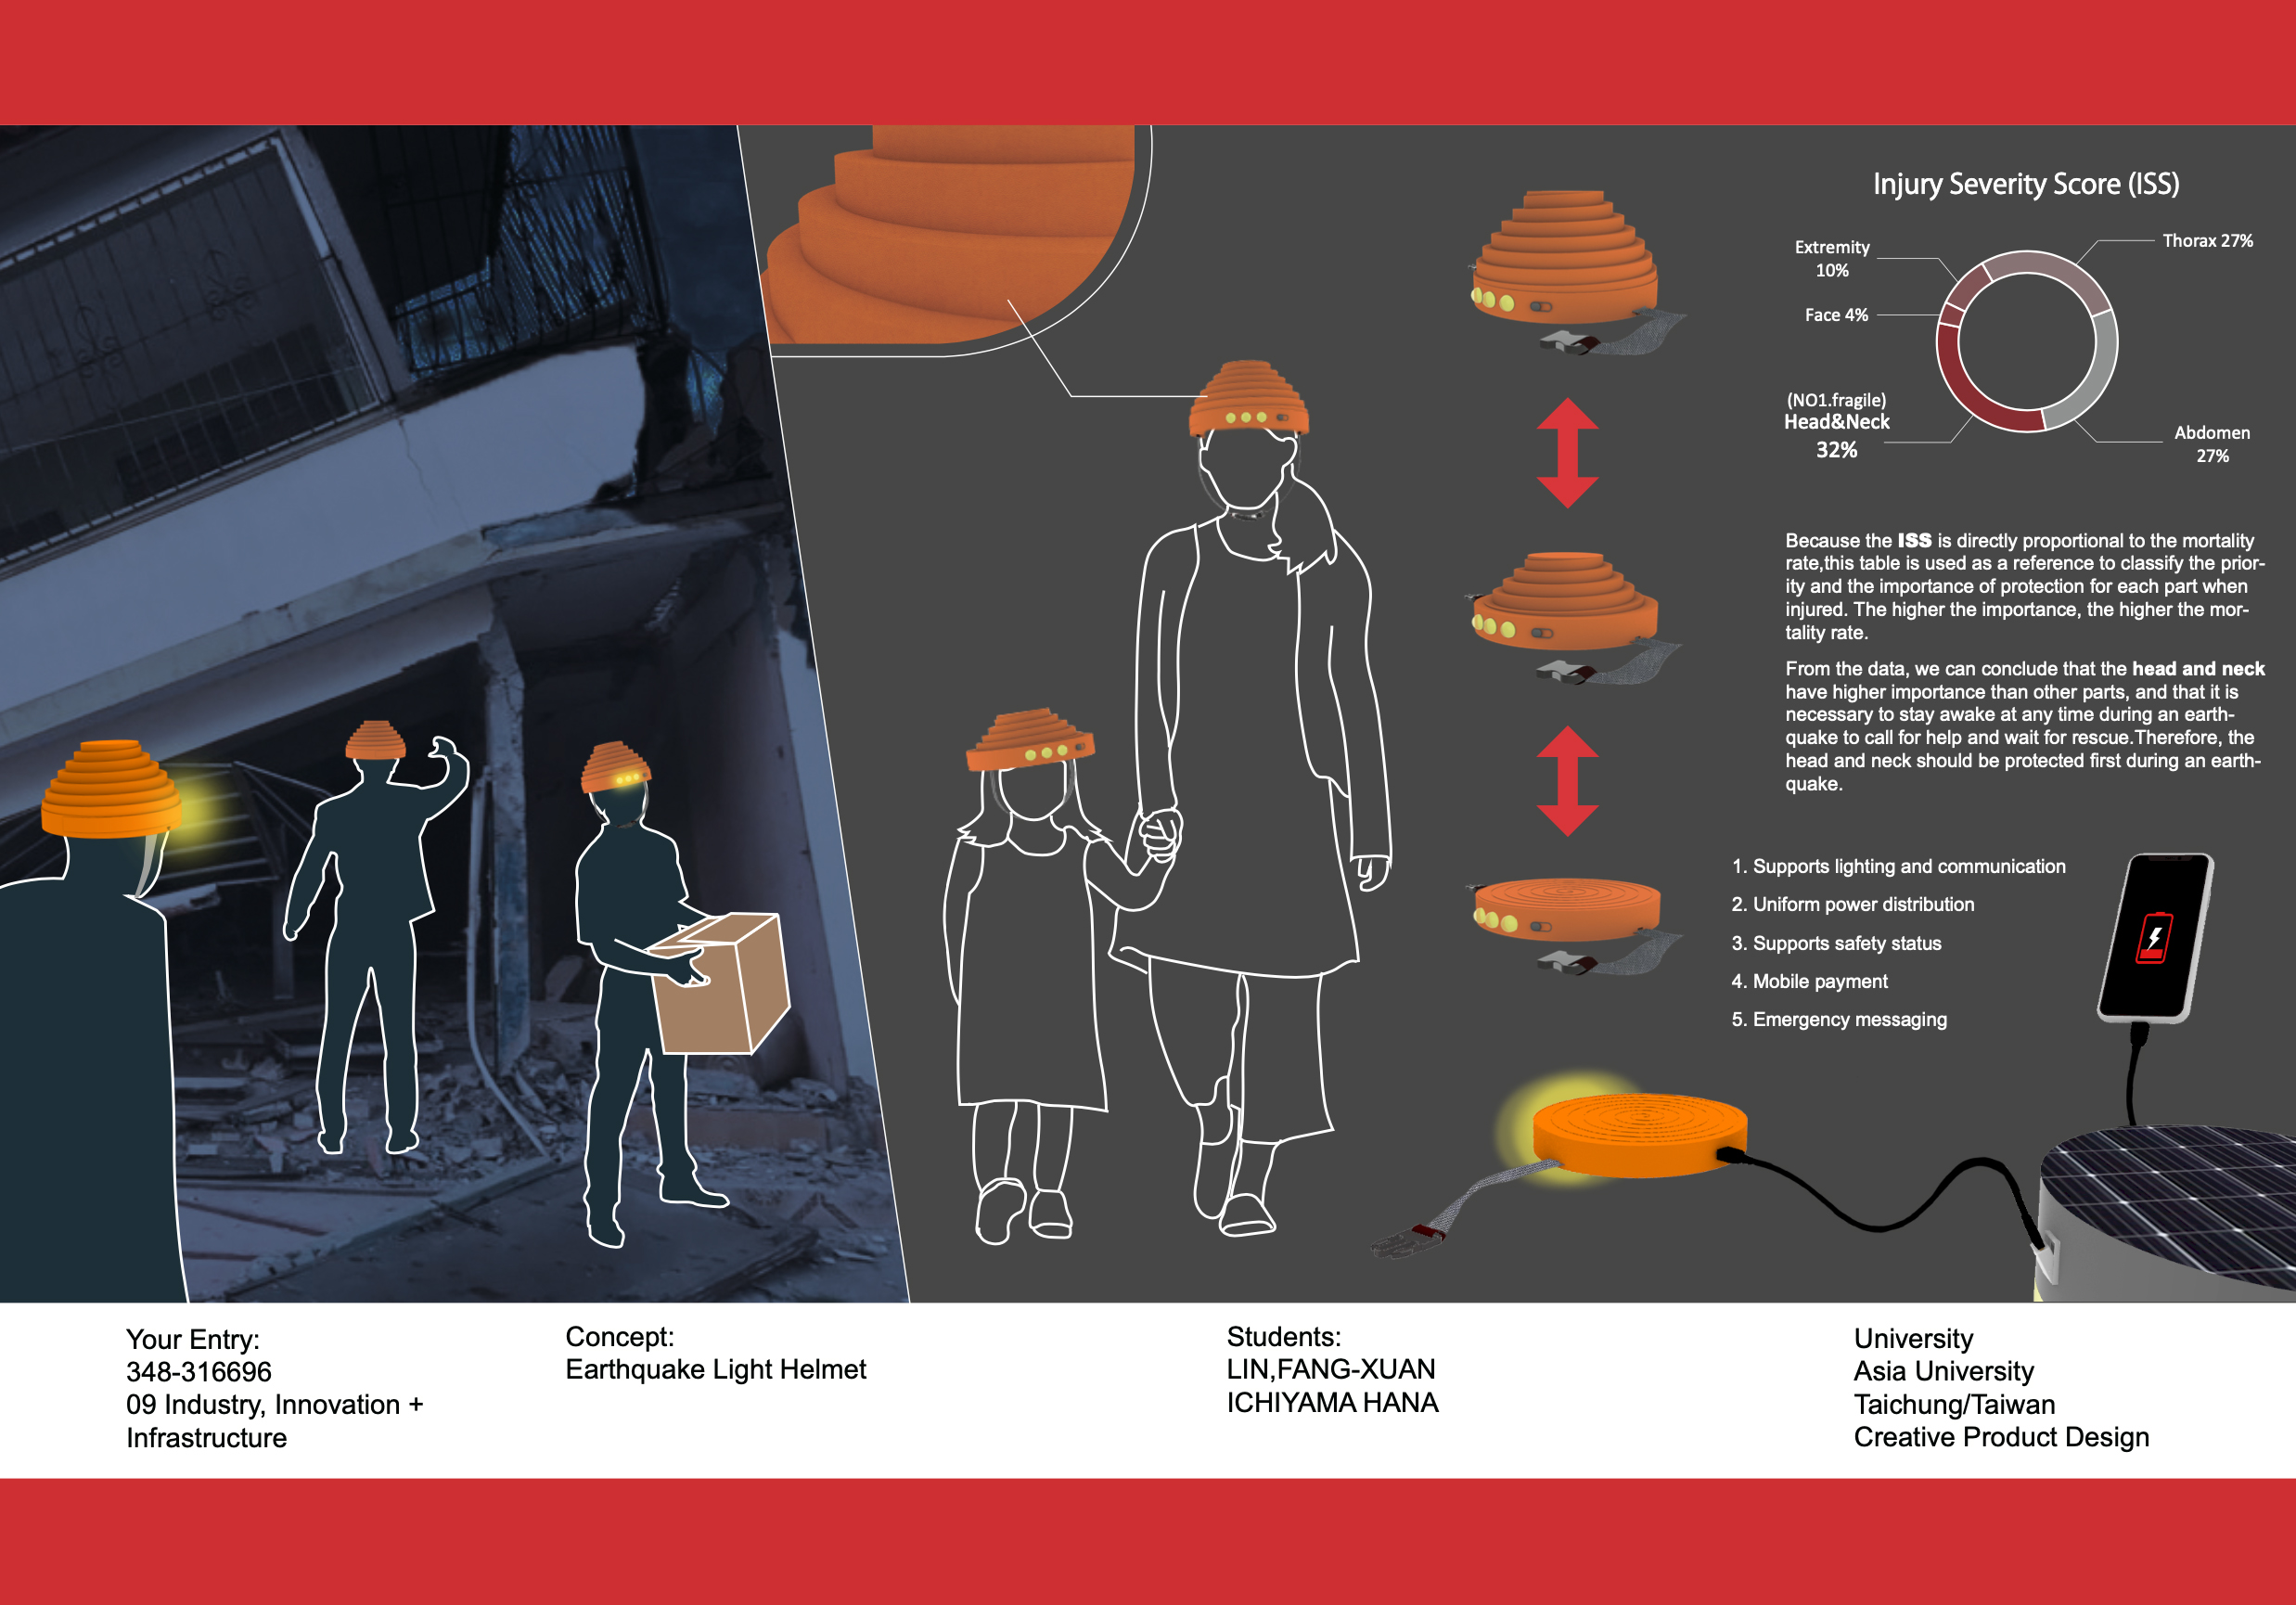 亞大商品系學生設計的「地震防護支援系統」，提供能發光的安全帽，災民戴上可免遭受二次傷害